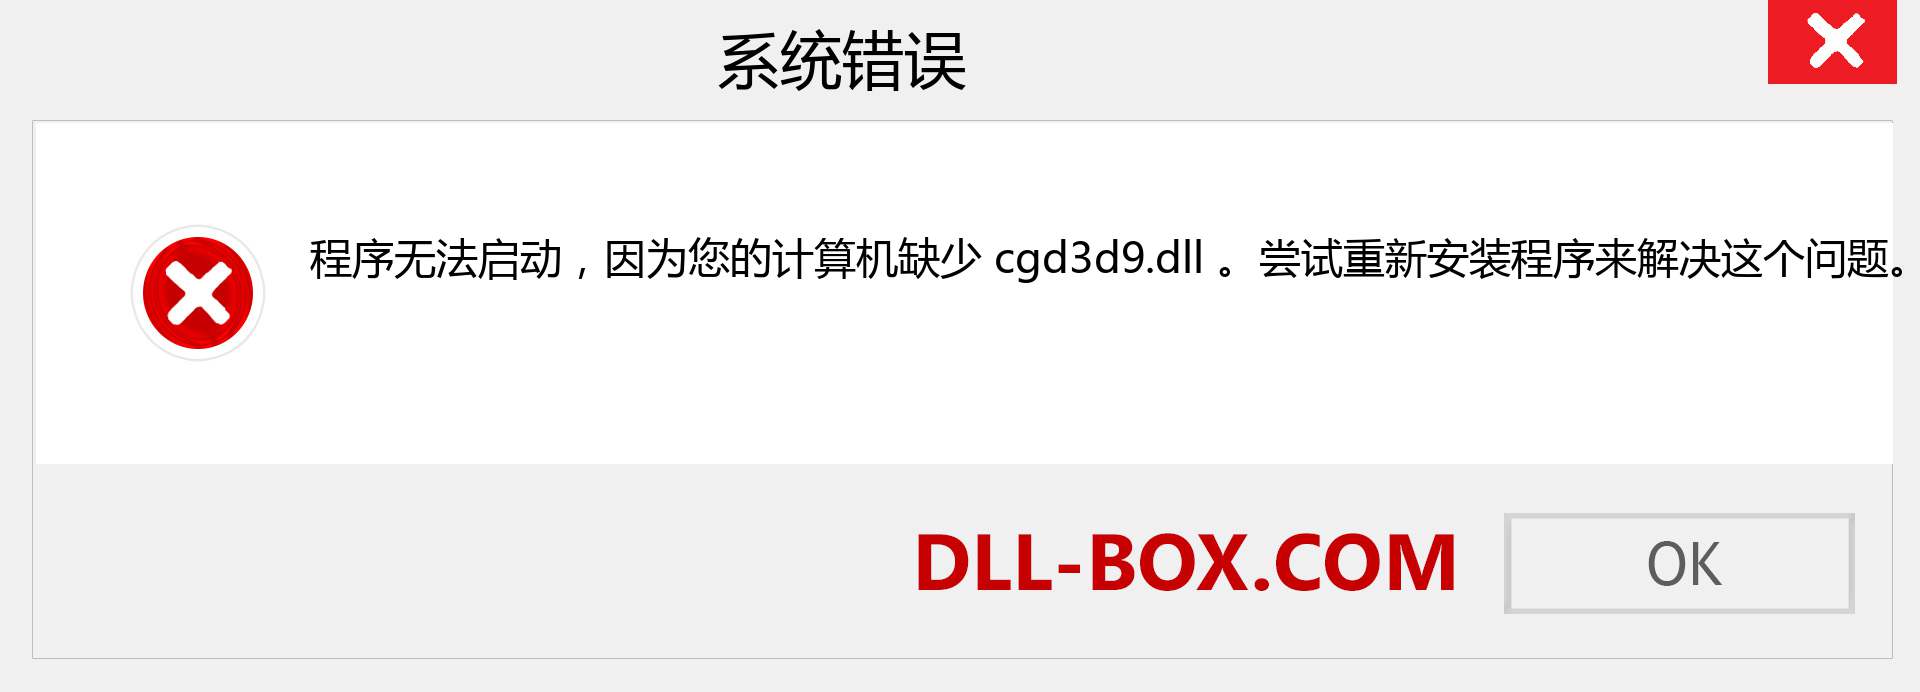 cgd3d9.dll 文件丢失？。 适用于 Windows 7、8、10 的下载 - 修复 Windows、照片、图像上的 cgd3d9 dll 丢失错误